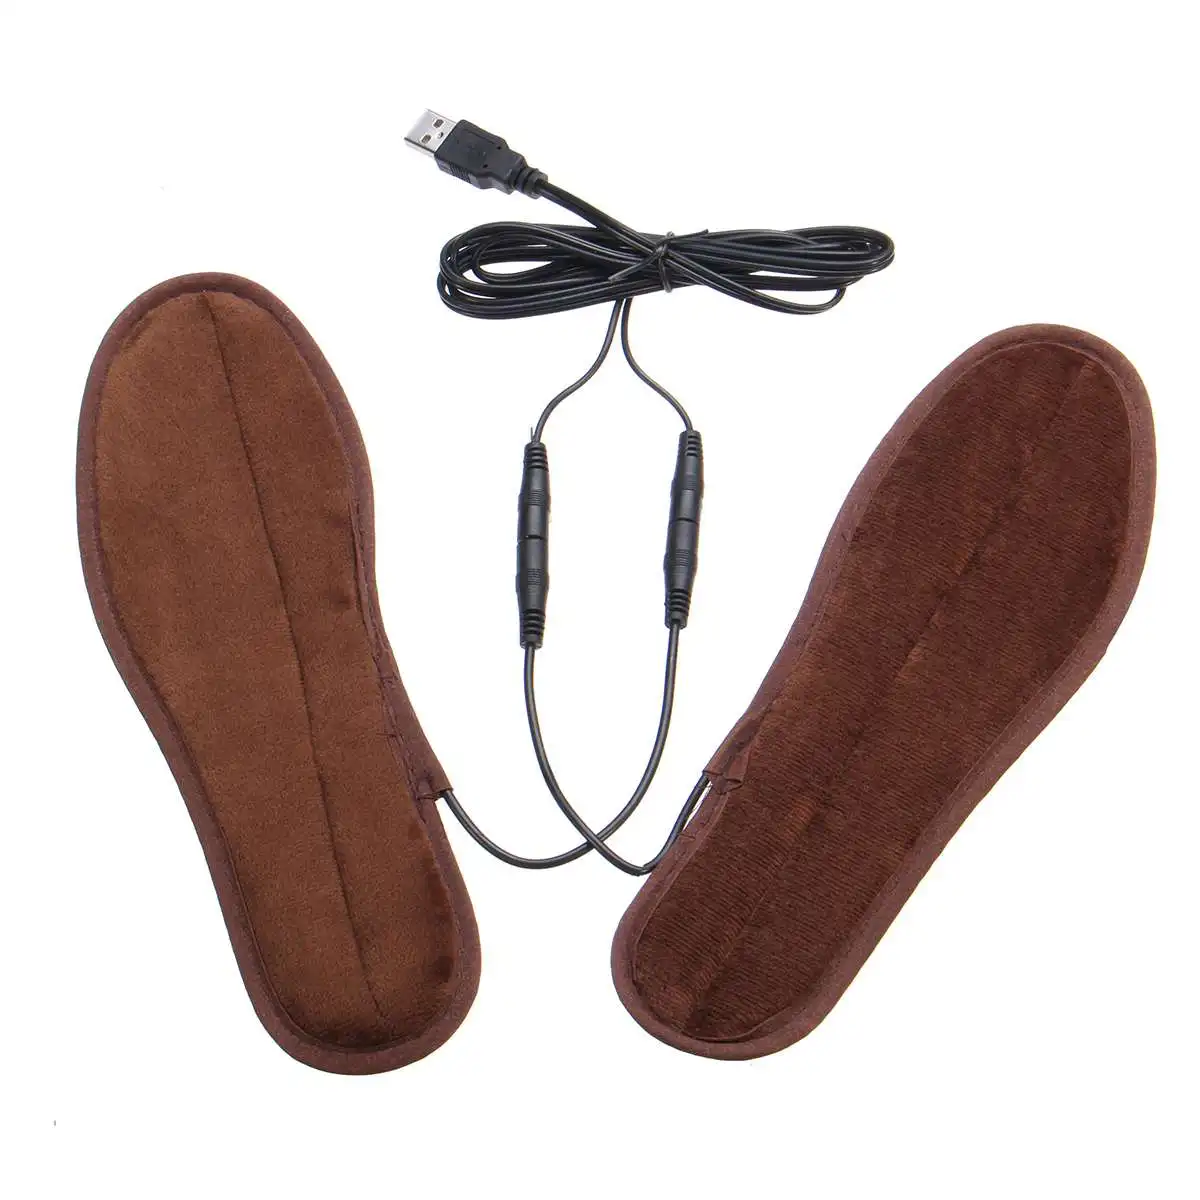 USB с электрическим подогревом стельки подошвы зима мягкий флис Отопление для мужчин и женщин ноги теплее тепло сапоги обувь колодки